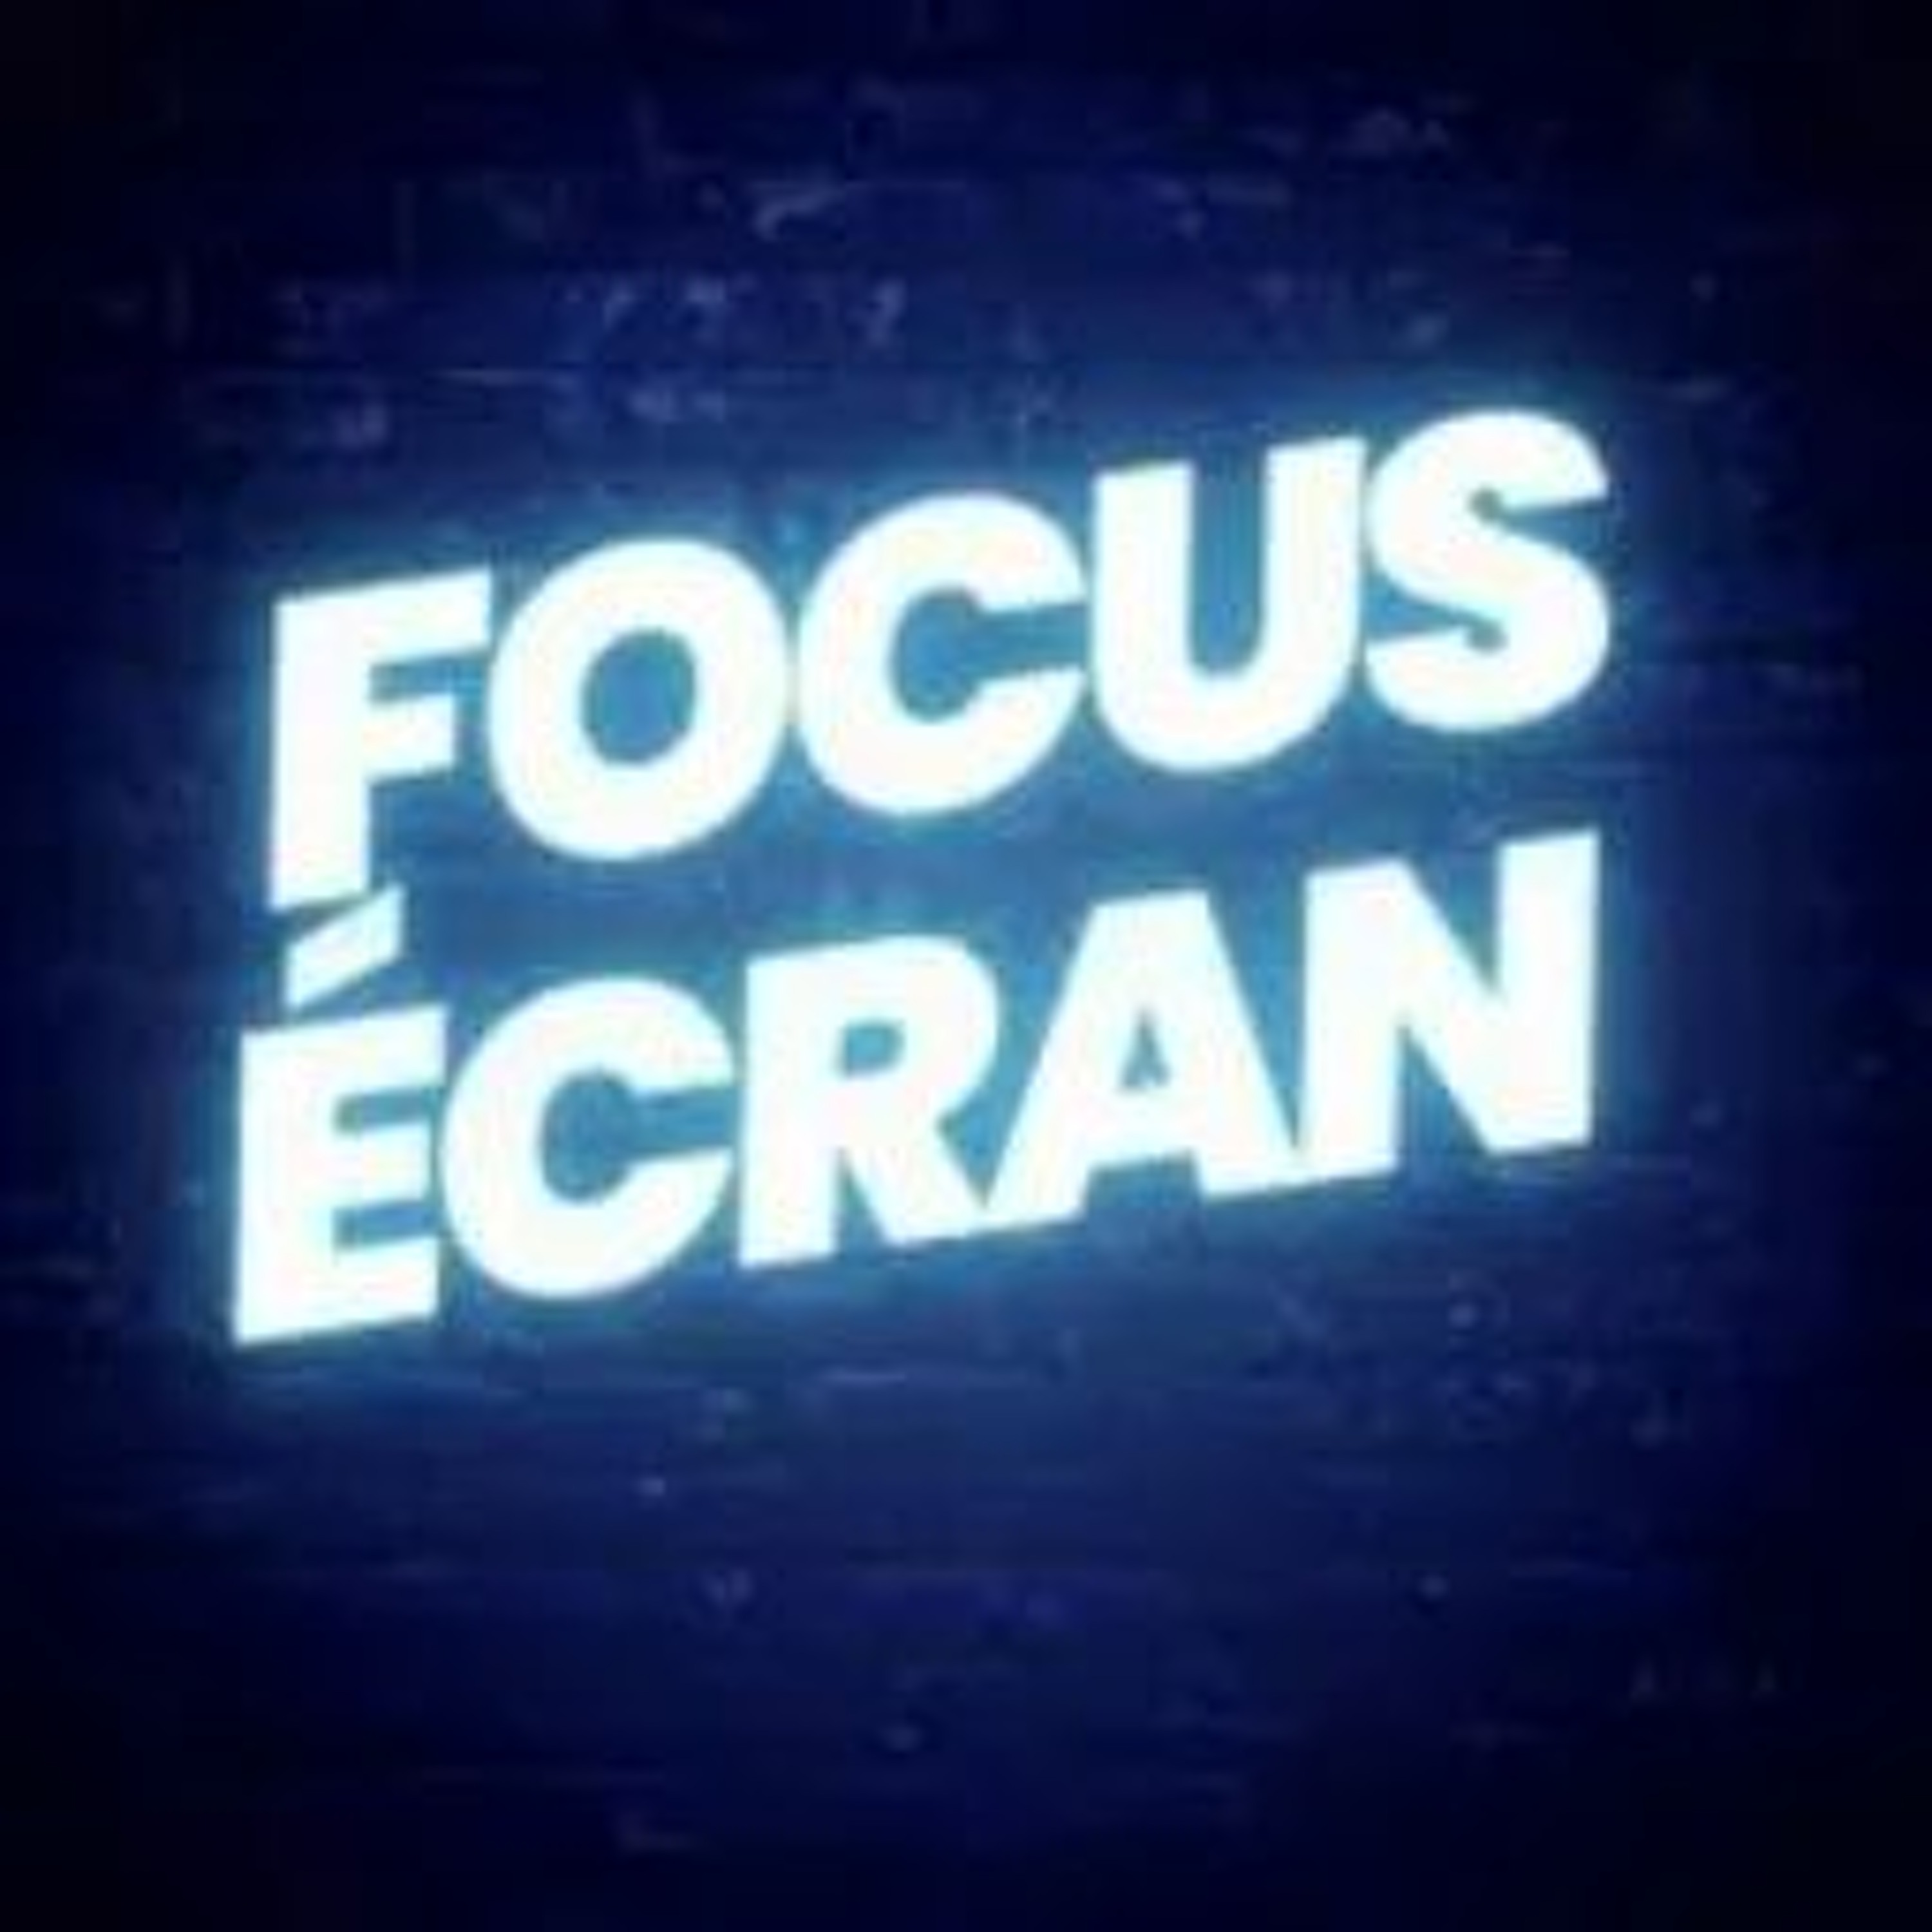 Focus Écran S6 Ep18 Le mauvais démarrage des nouveautés de France Télé et HPI diffusé en 2 parties ?